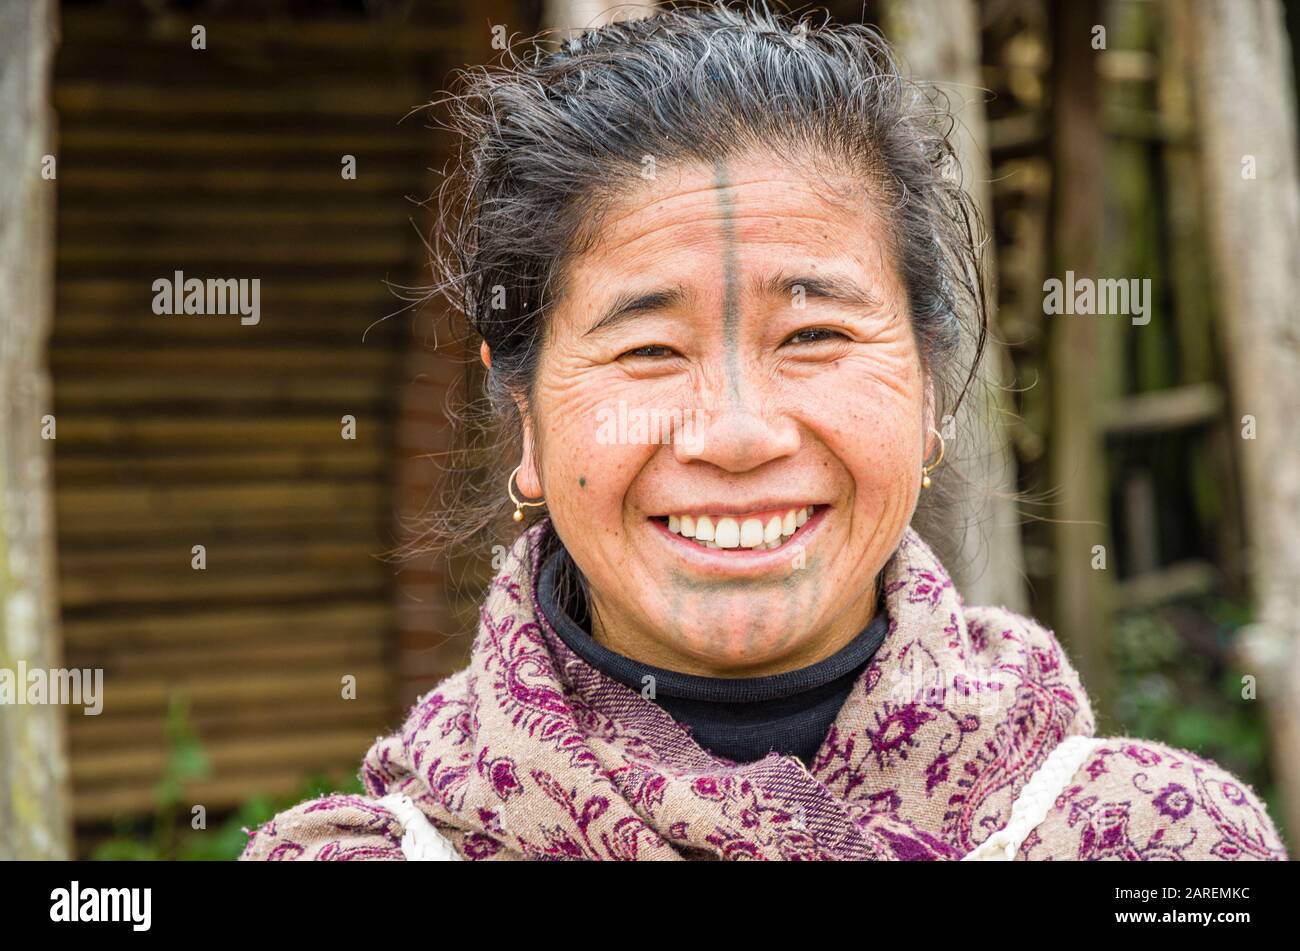 Portrait d'une femme d'Apatani sans les disques traditionnels de bambou dans ses narines Banque D'Images